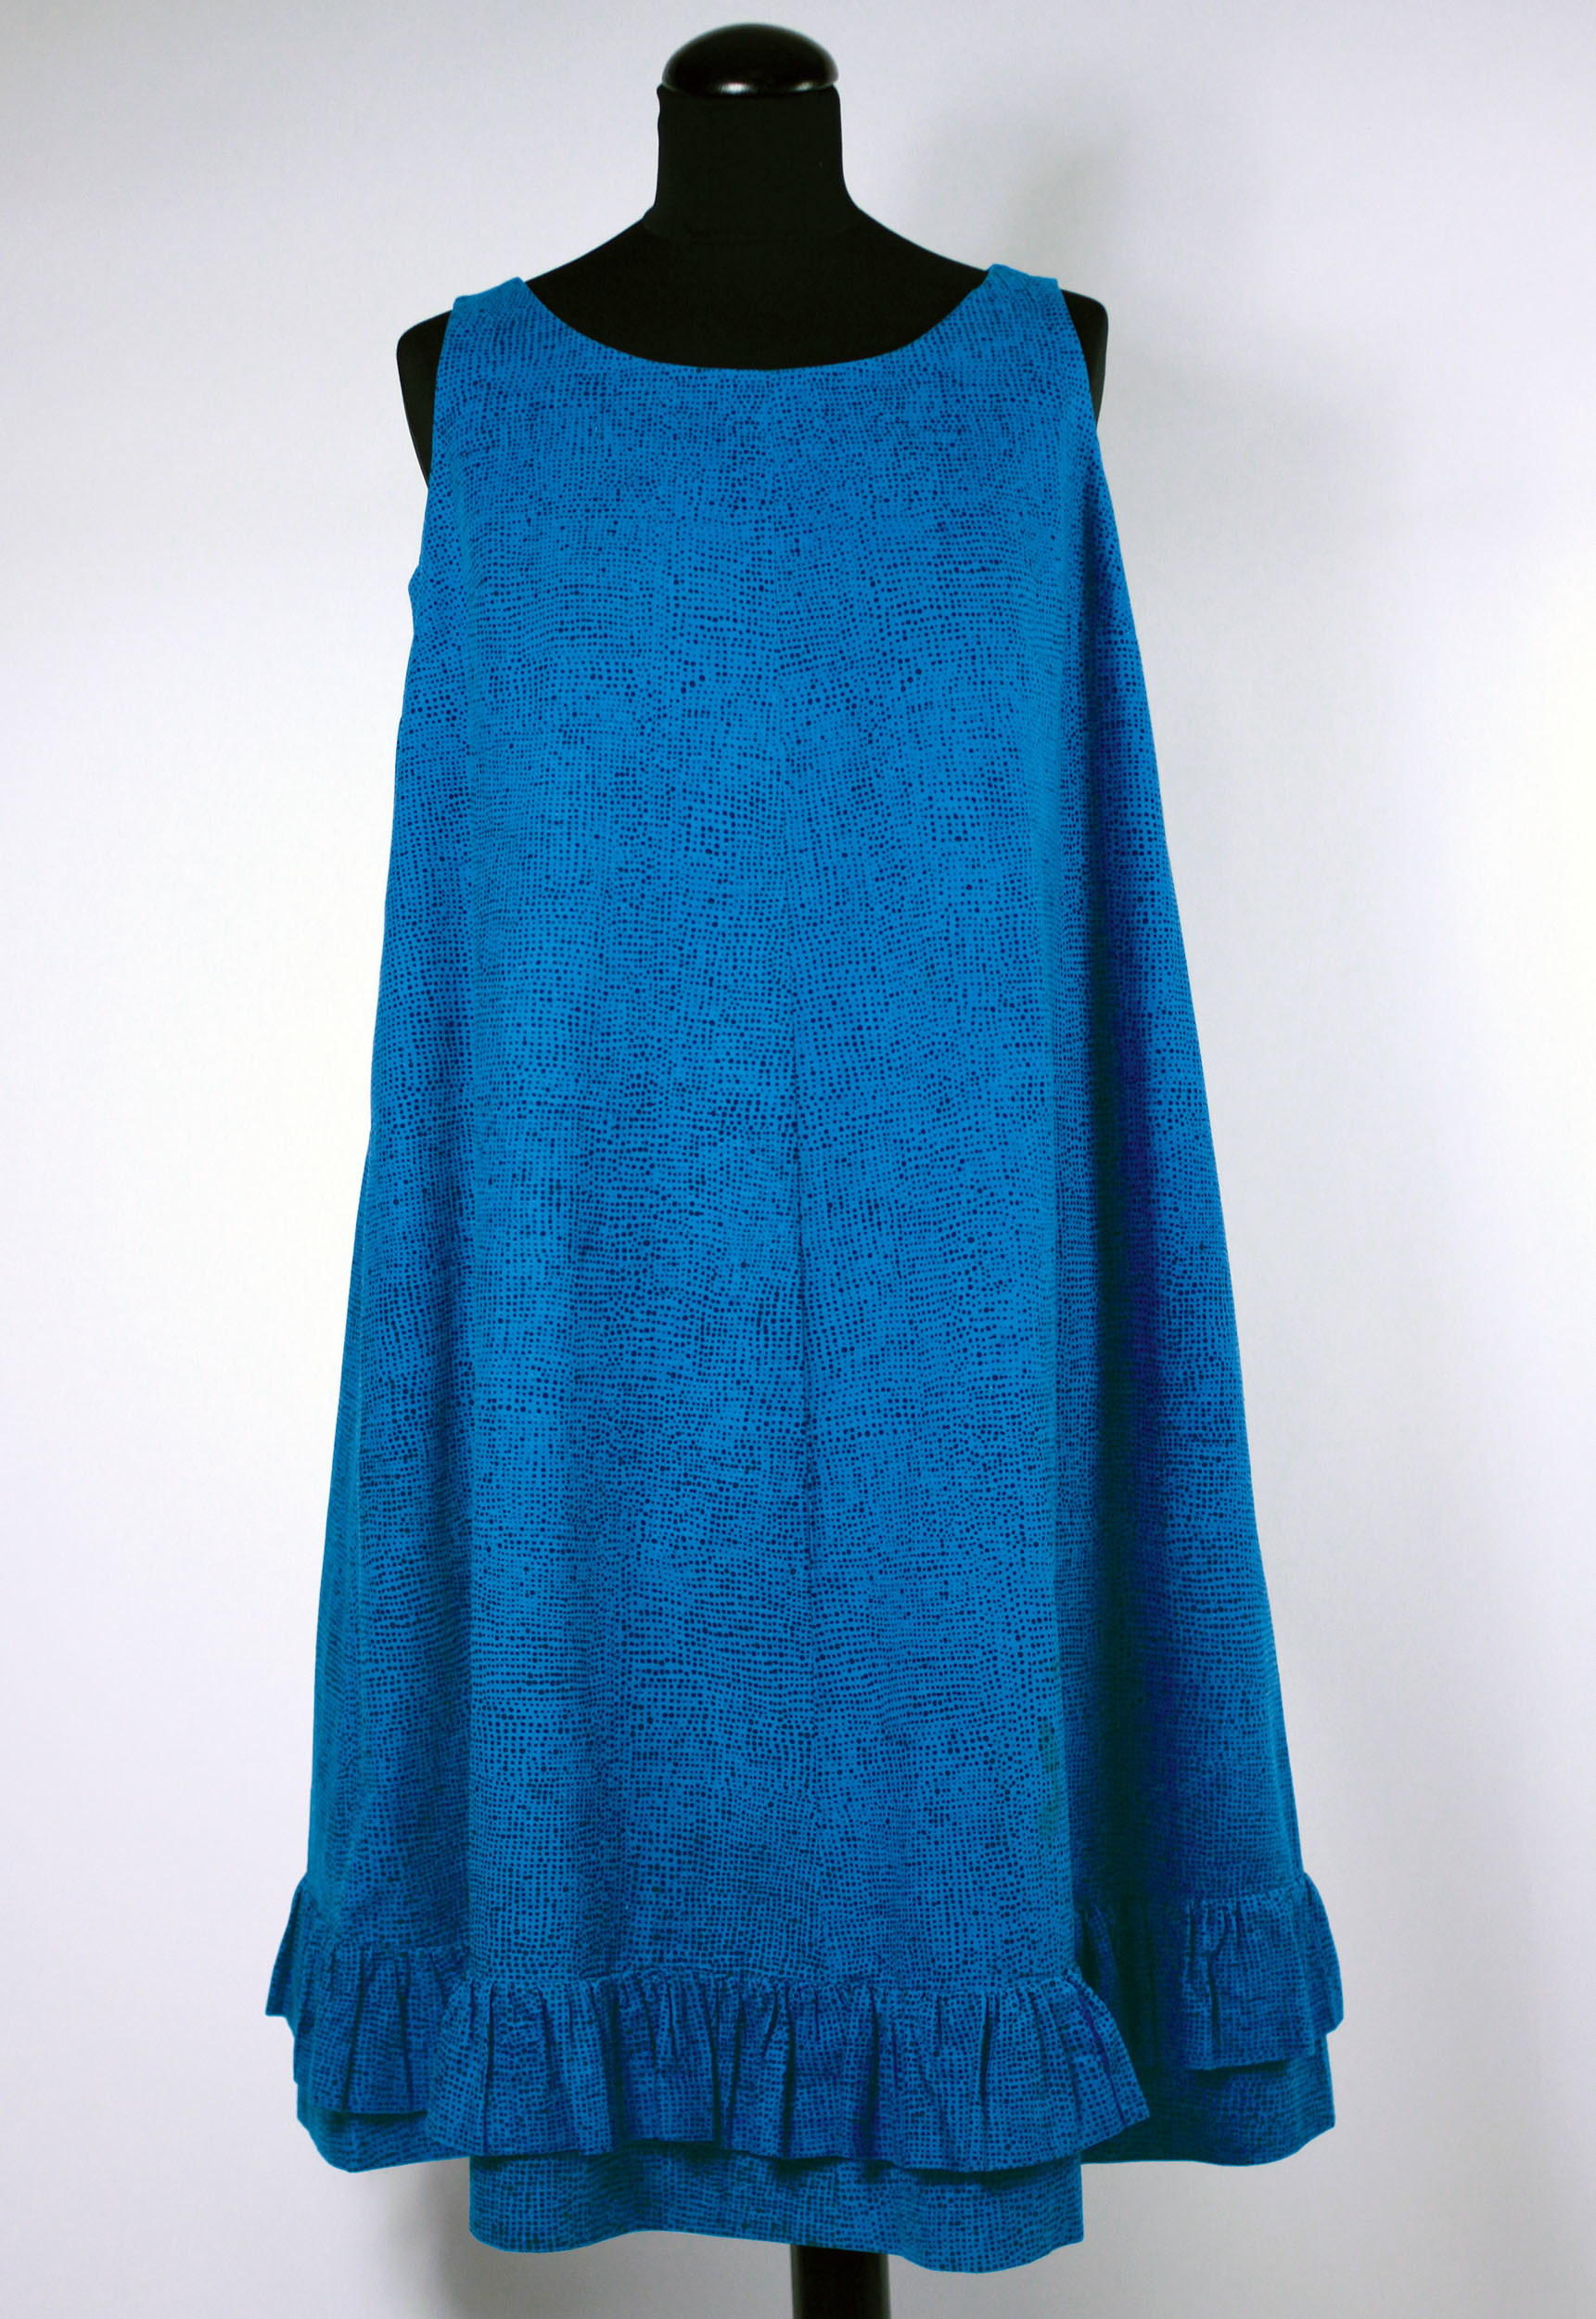 ジャクリーン・ケネディーが購入したドレス≪ヘイルヘルマ≫、1959年　 ファブリック≪ナスティ≫（小さな無頭釘）、1957年、 服飾・図案デザイン：ヴオッコ・ヌルメスニエミ　　Design Museum / Harry Kivilinna